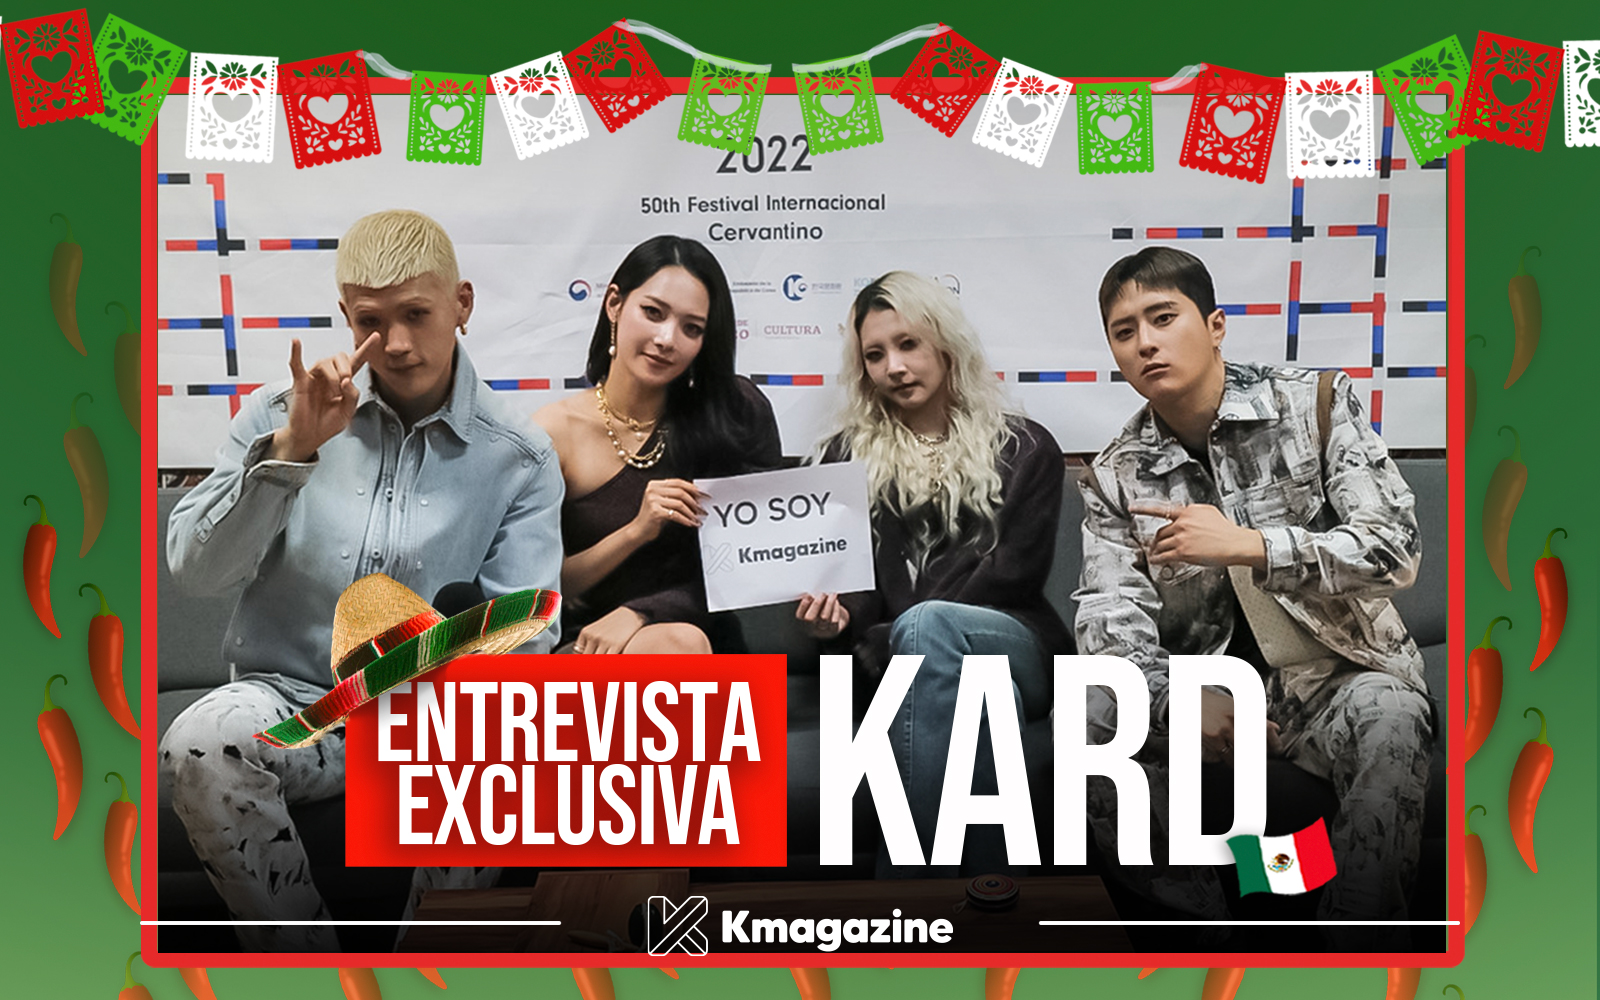 Video entrevista KARD en México